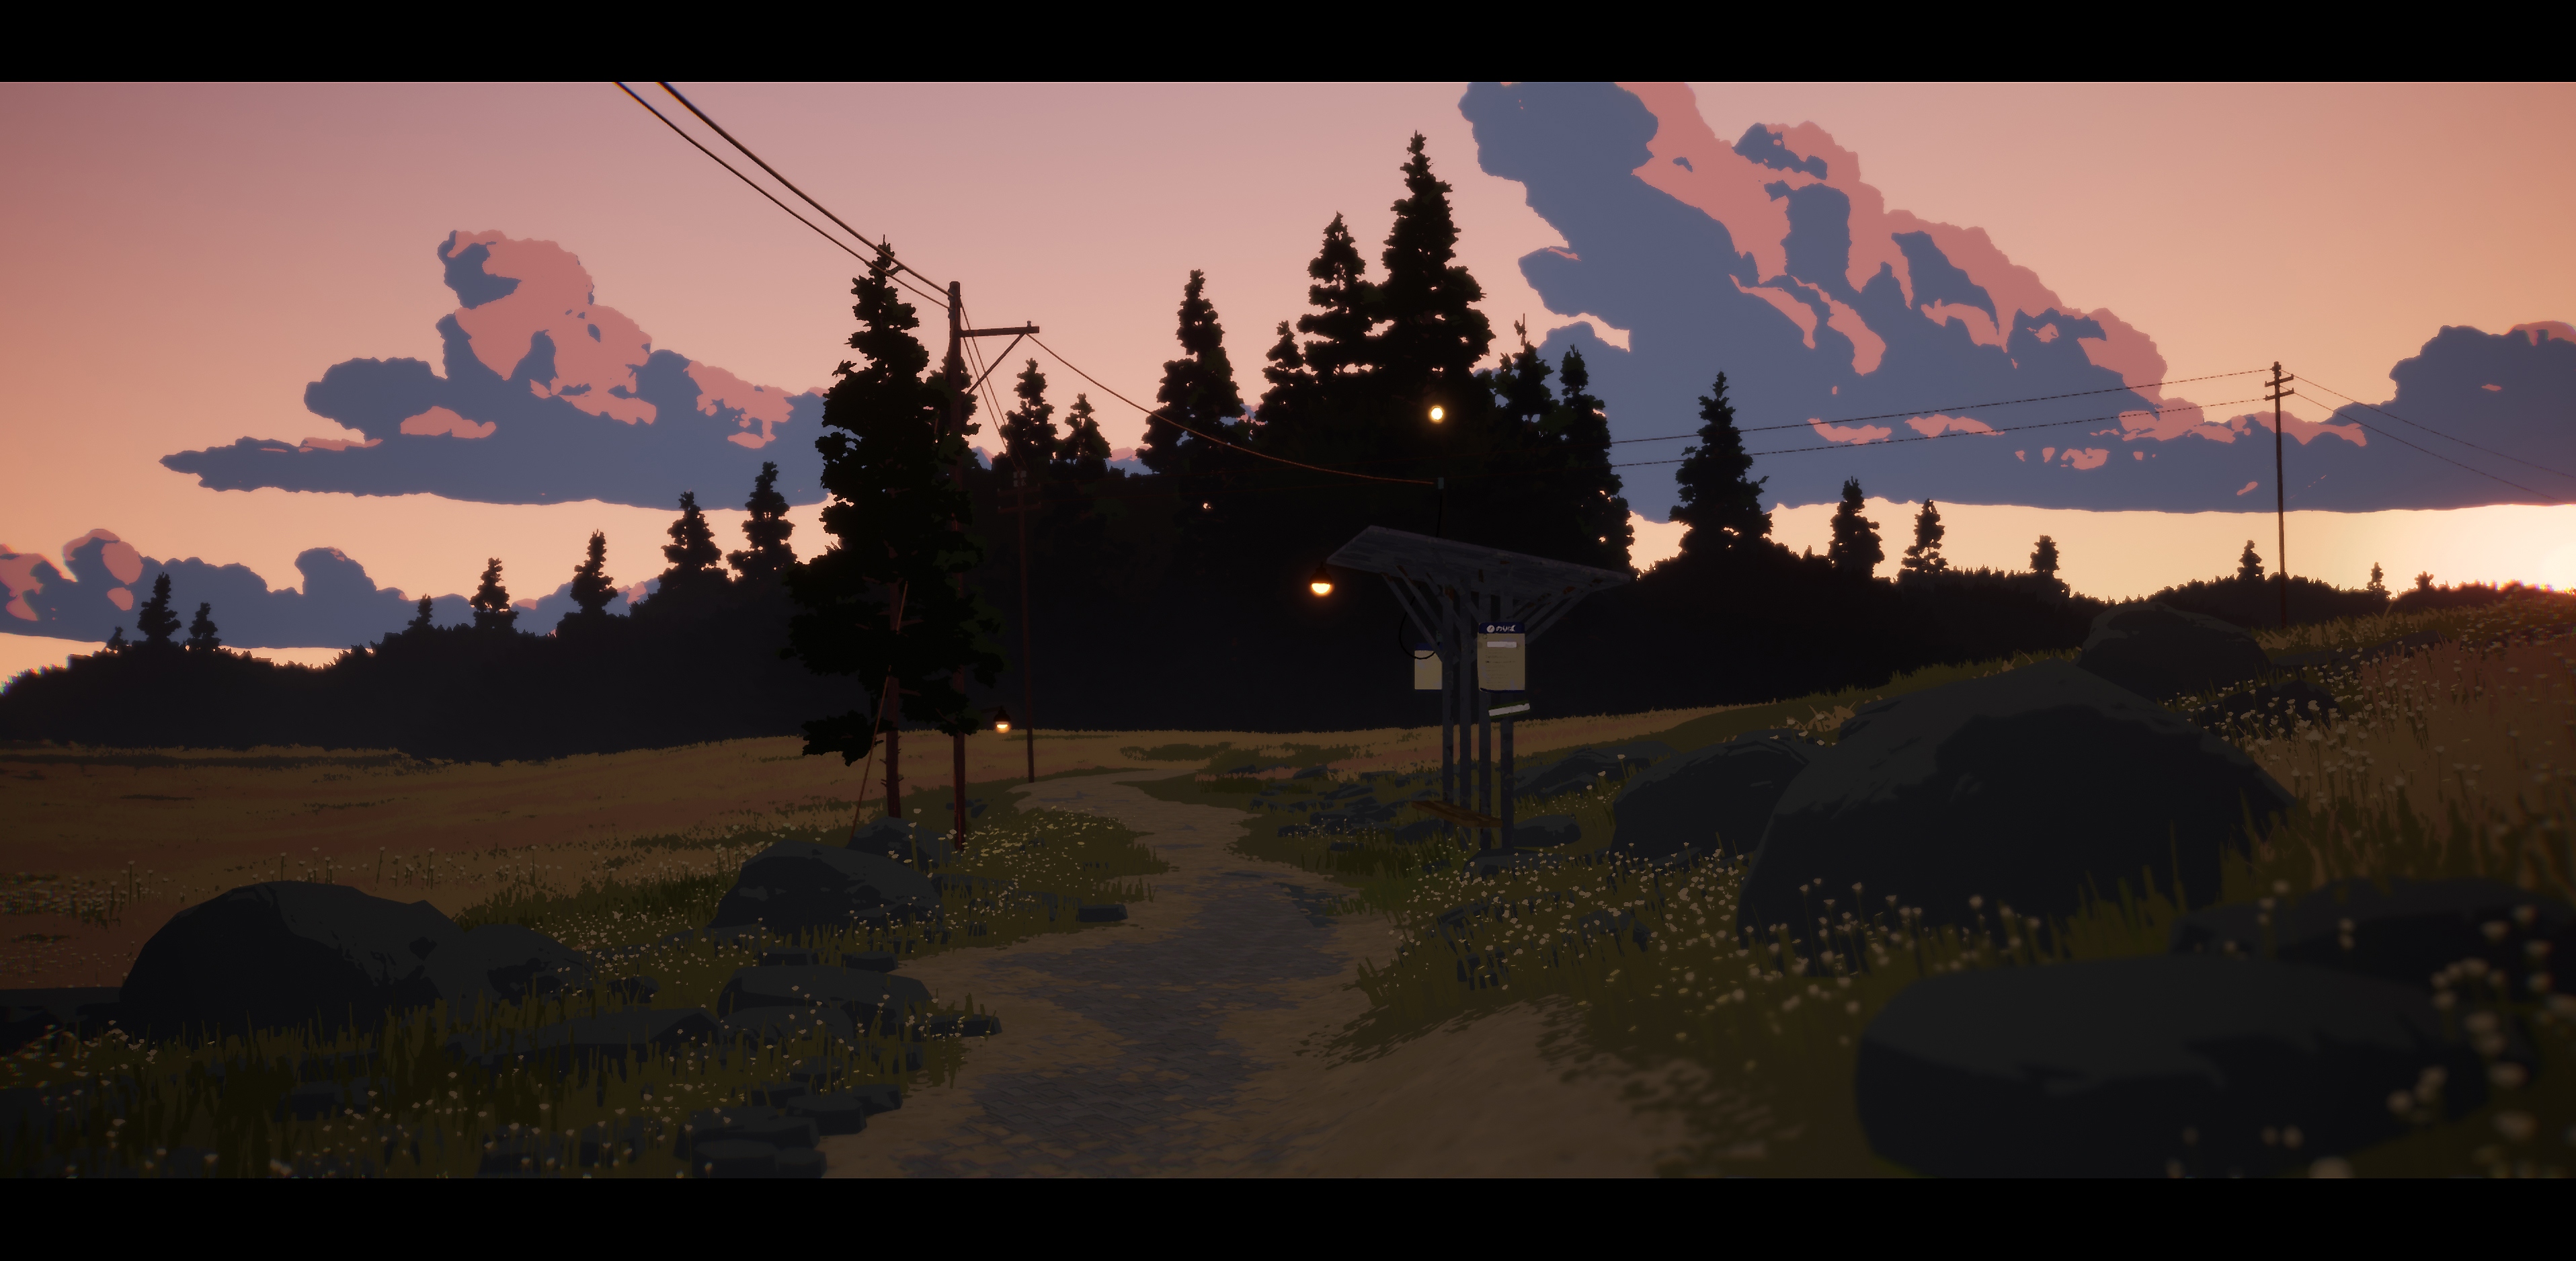 Season: Captura de pantalla de A Letter to the Future mostrando un camino que conduce hacia unos árboles